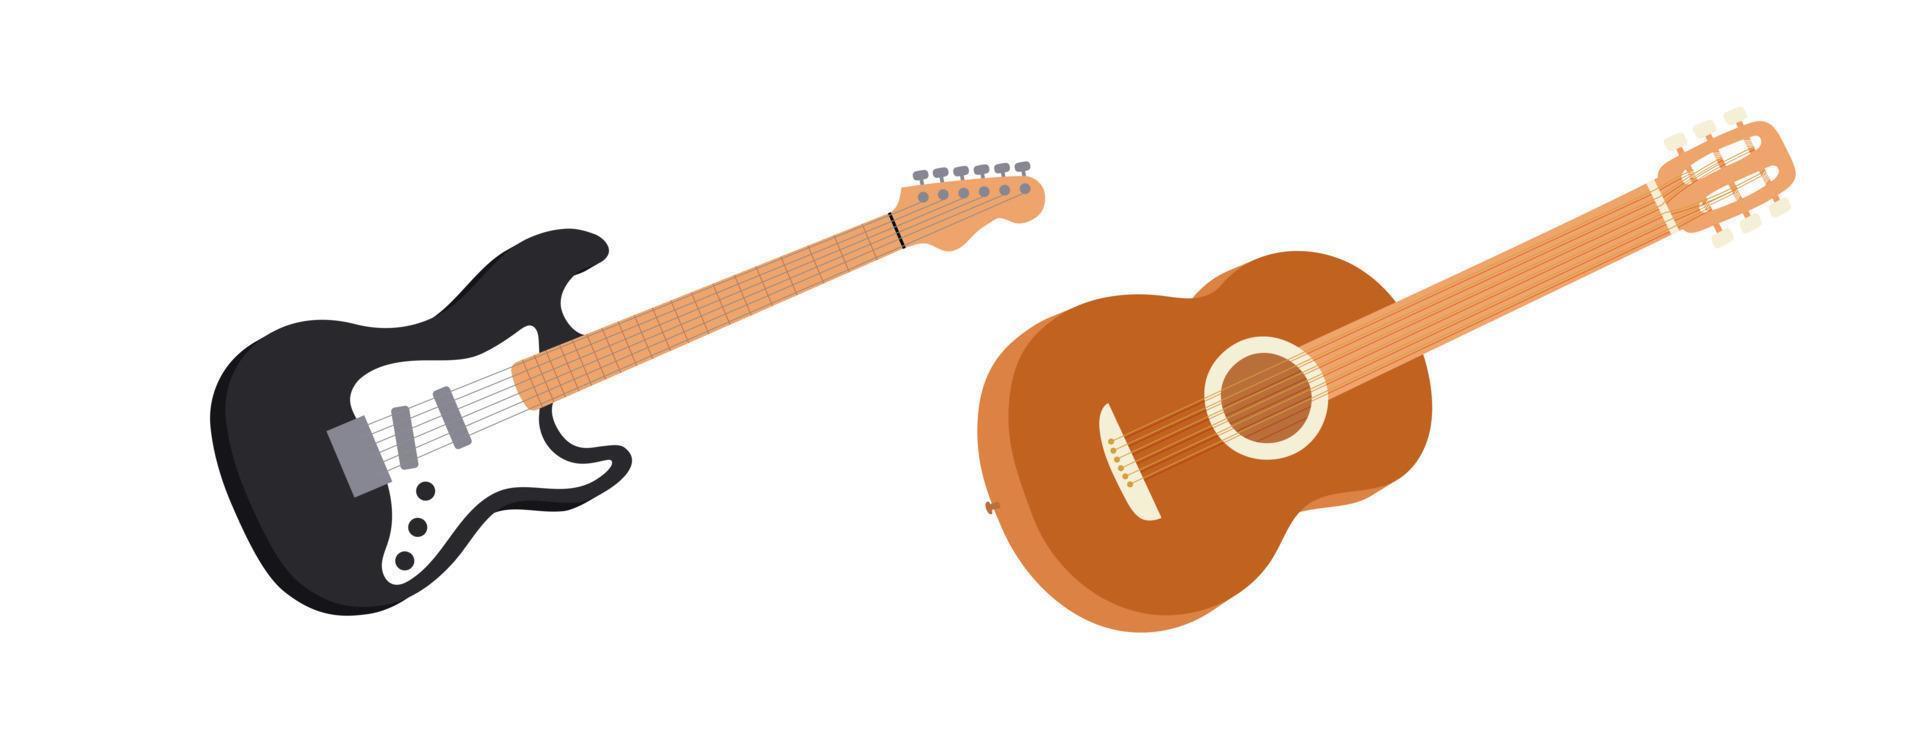 chitarra elettrica e acustica in stile cartone animato vettore